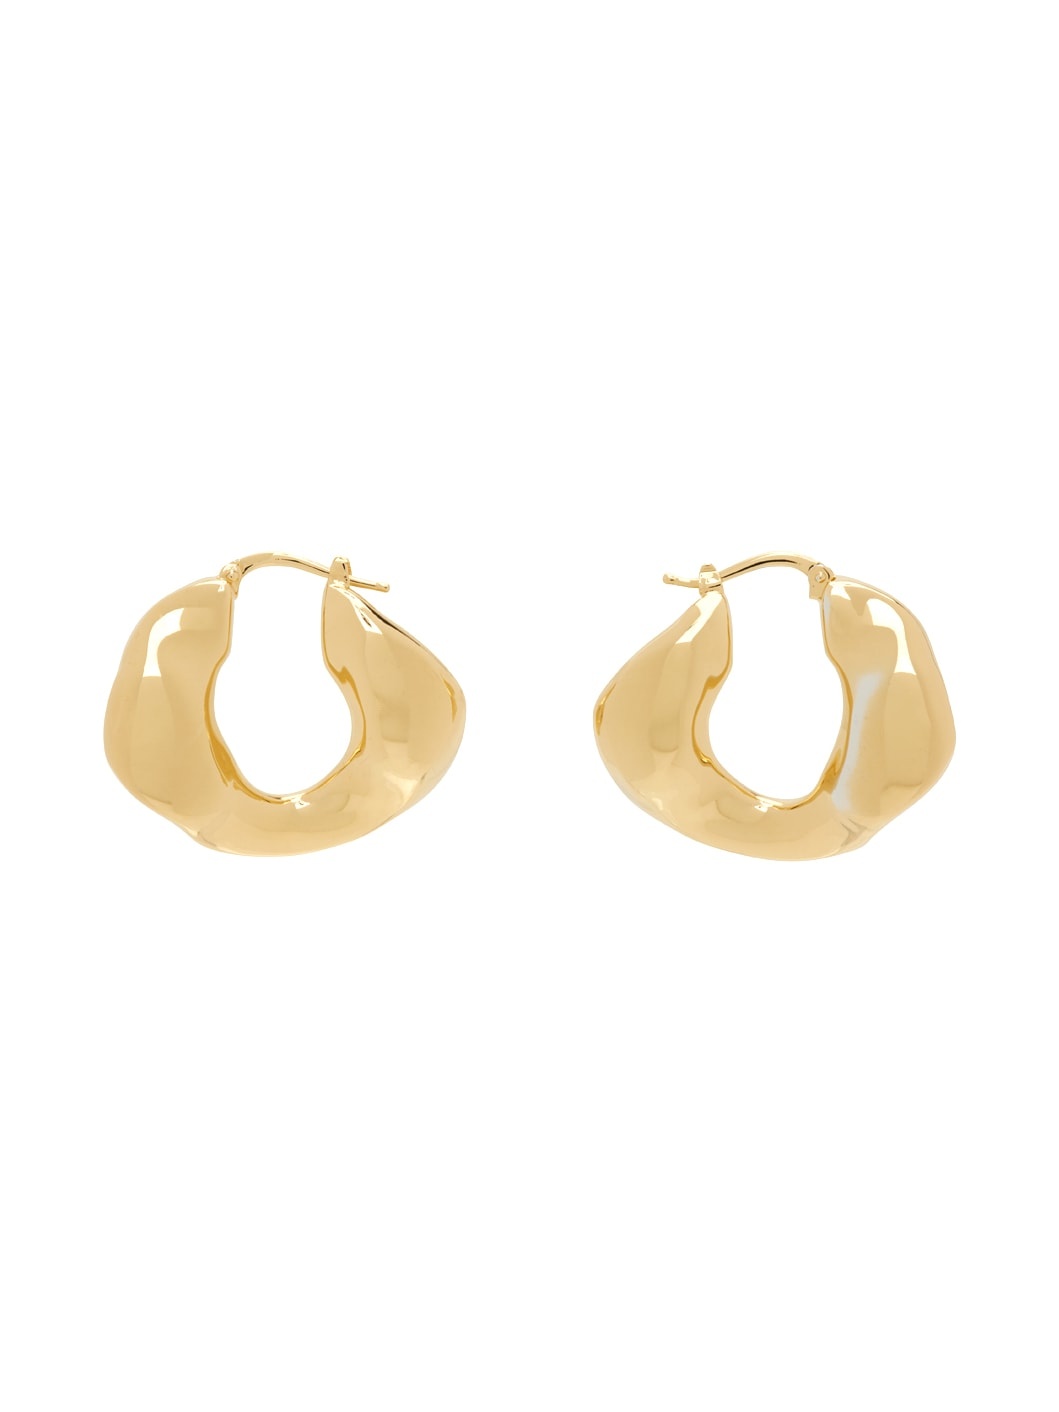 Gold Hoop Earrings - 1